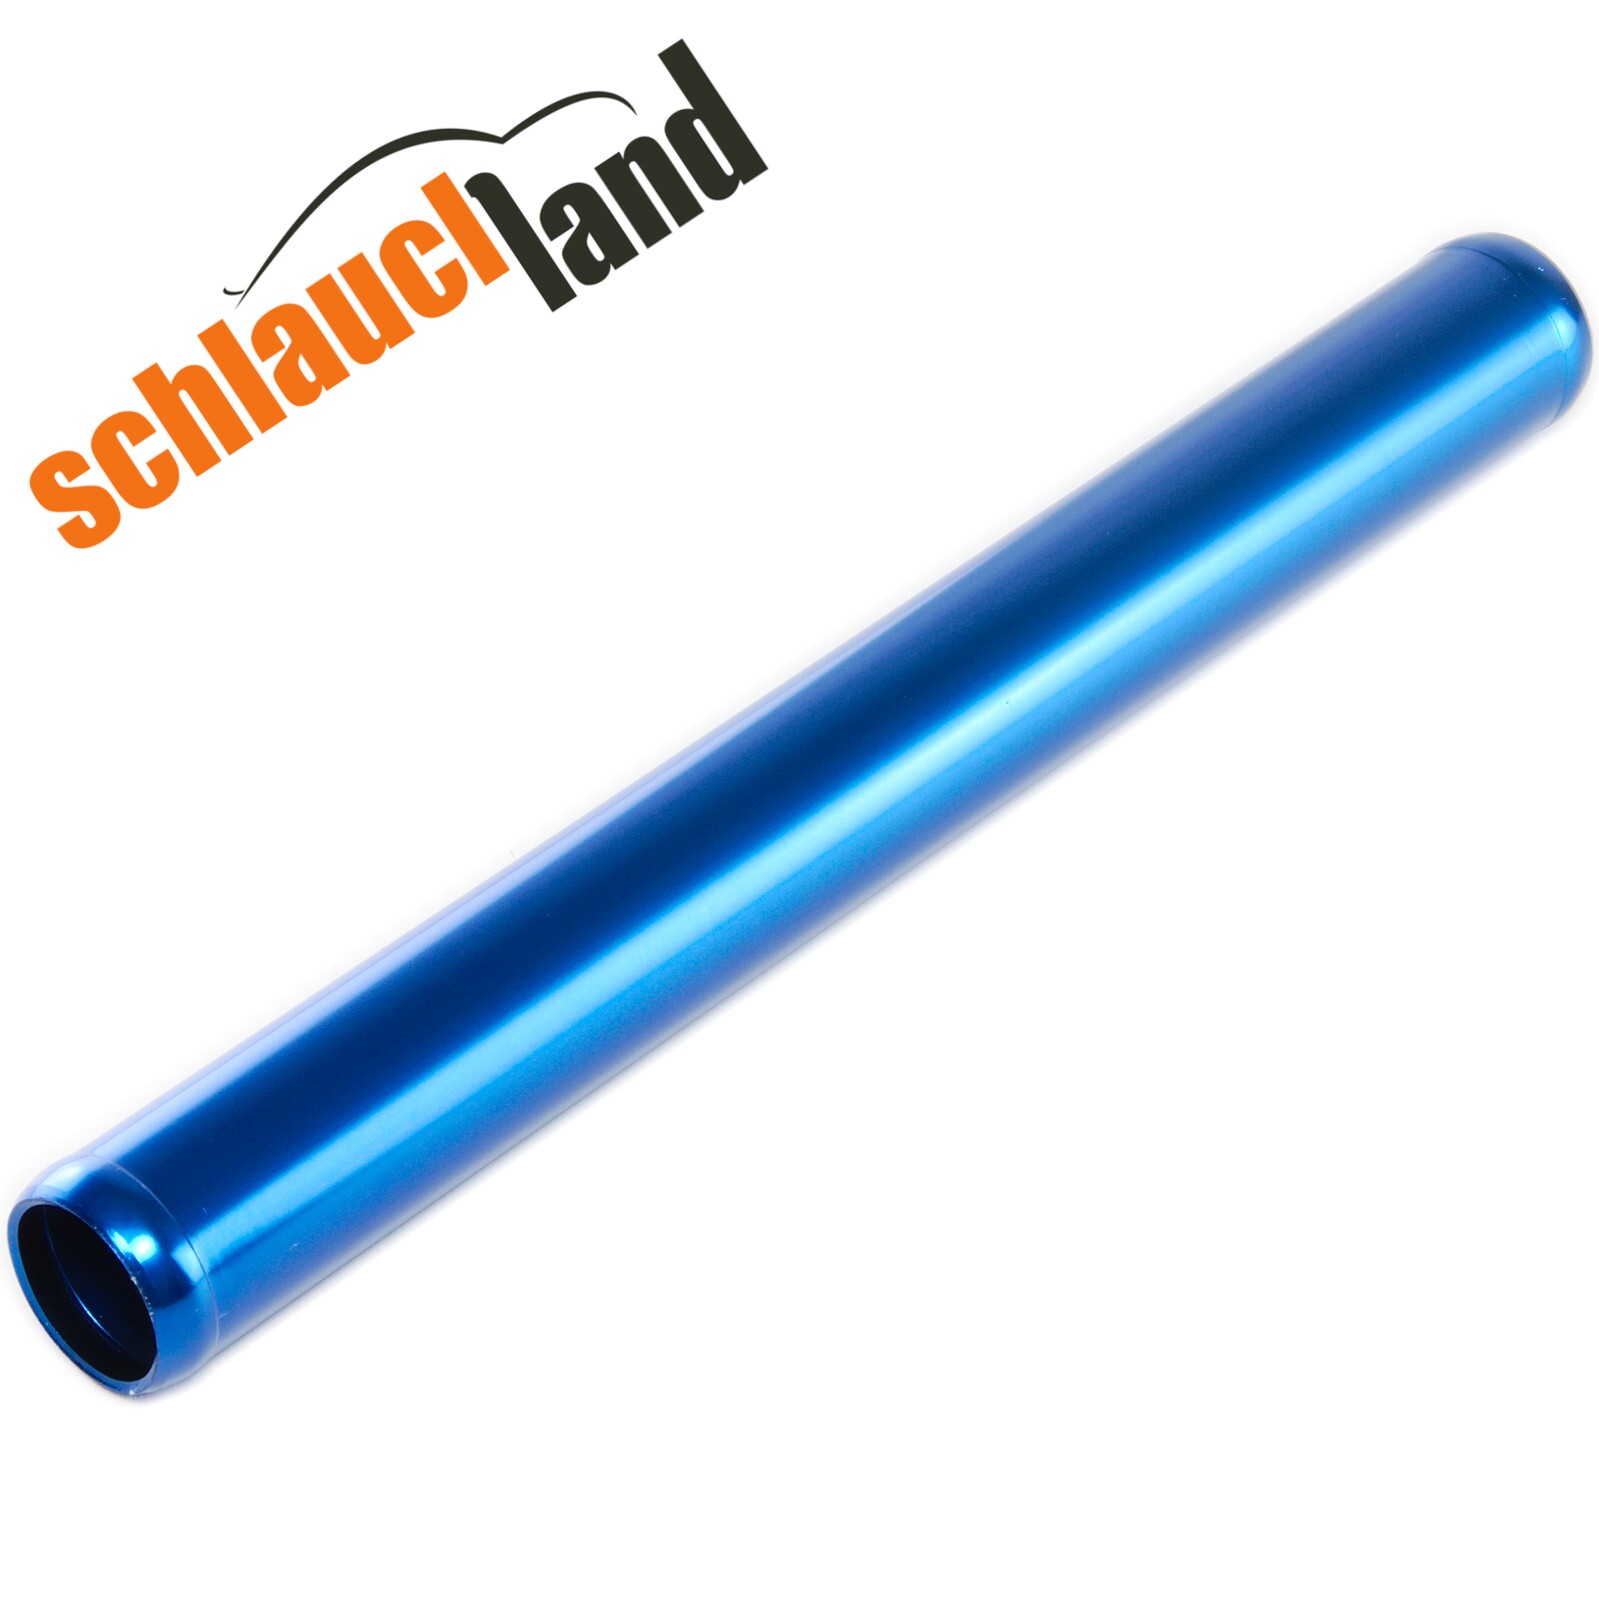 Alu-Rohr 60cm AD 90mm blau*** Alurohr Aluminium Rohr Alu Schlauchverbinder  Turbo